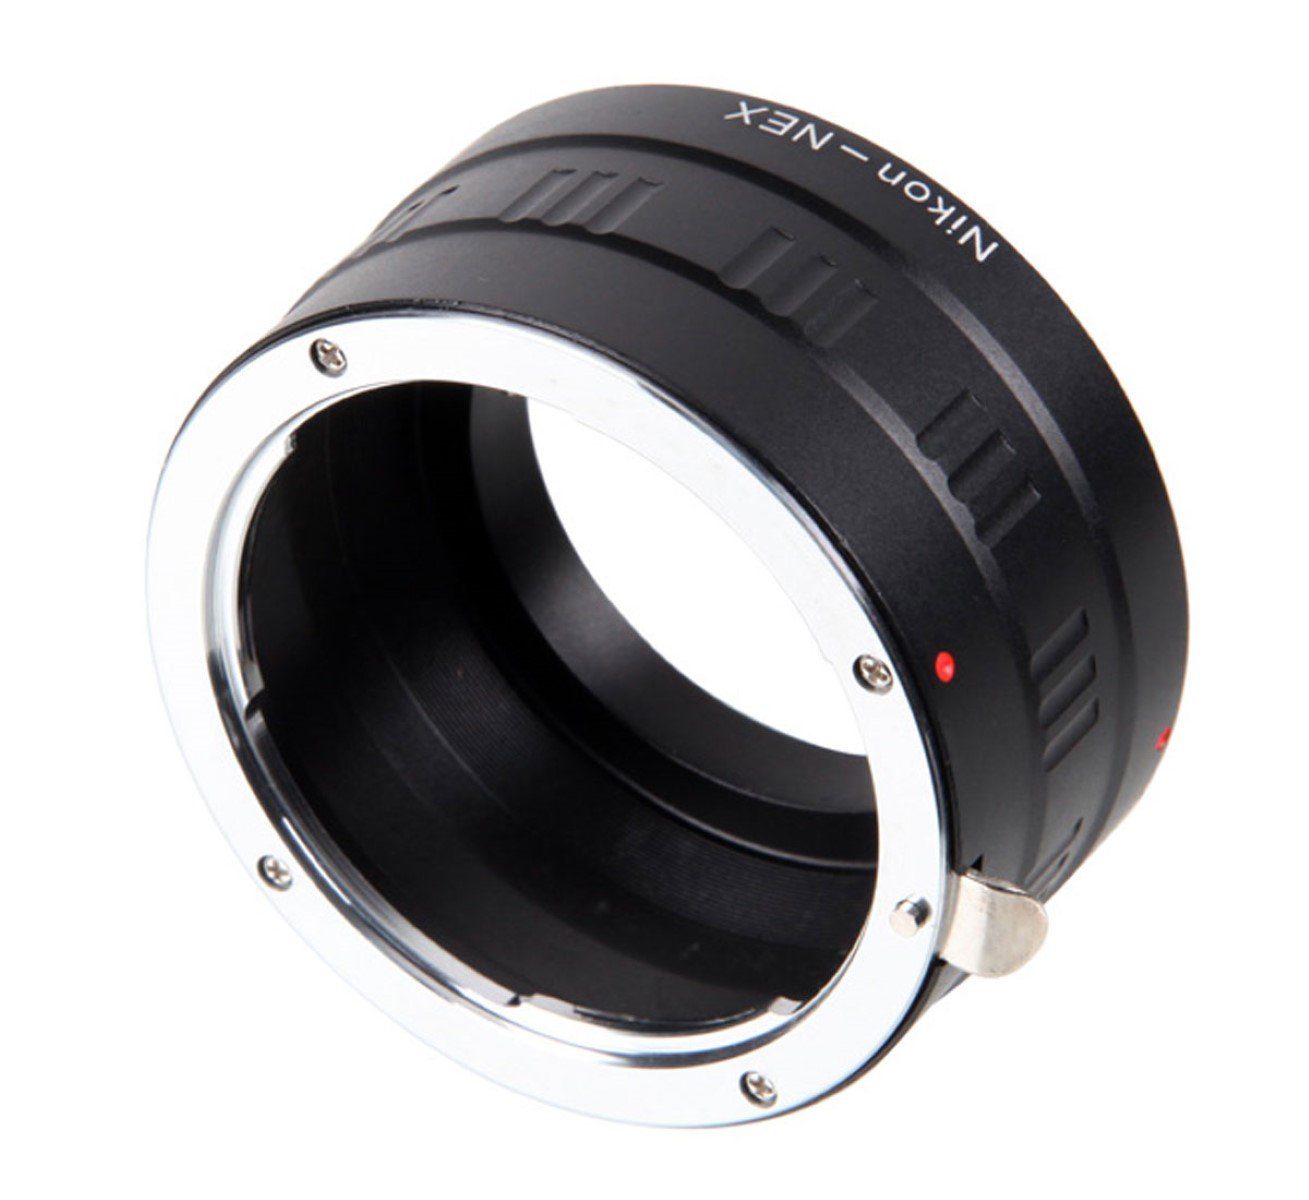 Objektivadapter Sony E-Mount ayex - Nikon Objektiveadapter Adapter (E-Bajonett) F-Objektiv